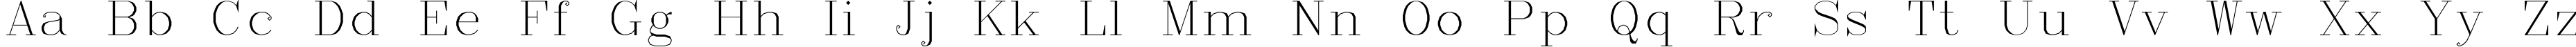 Пример написания английского алфавита шрифтом Complex